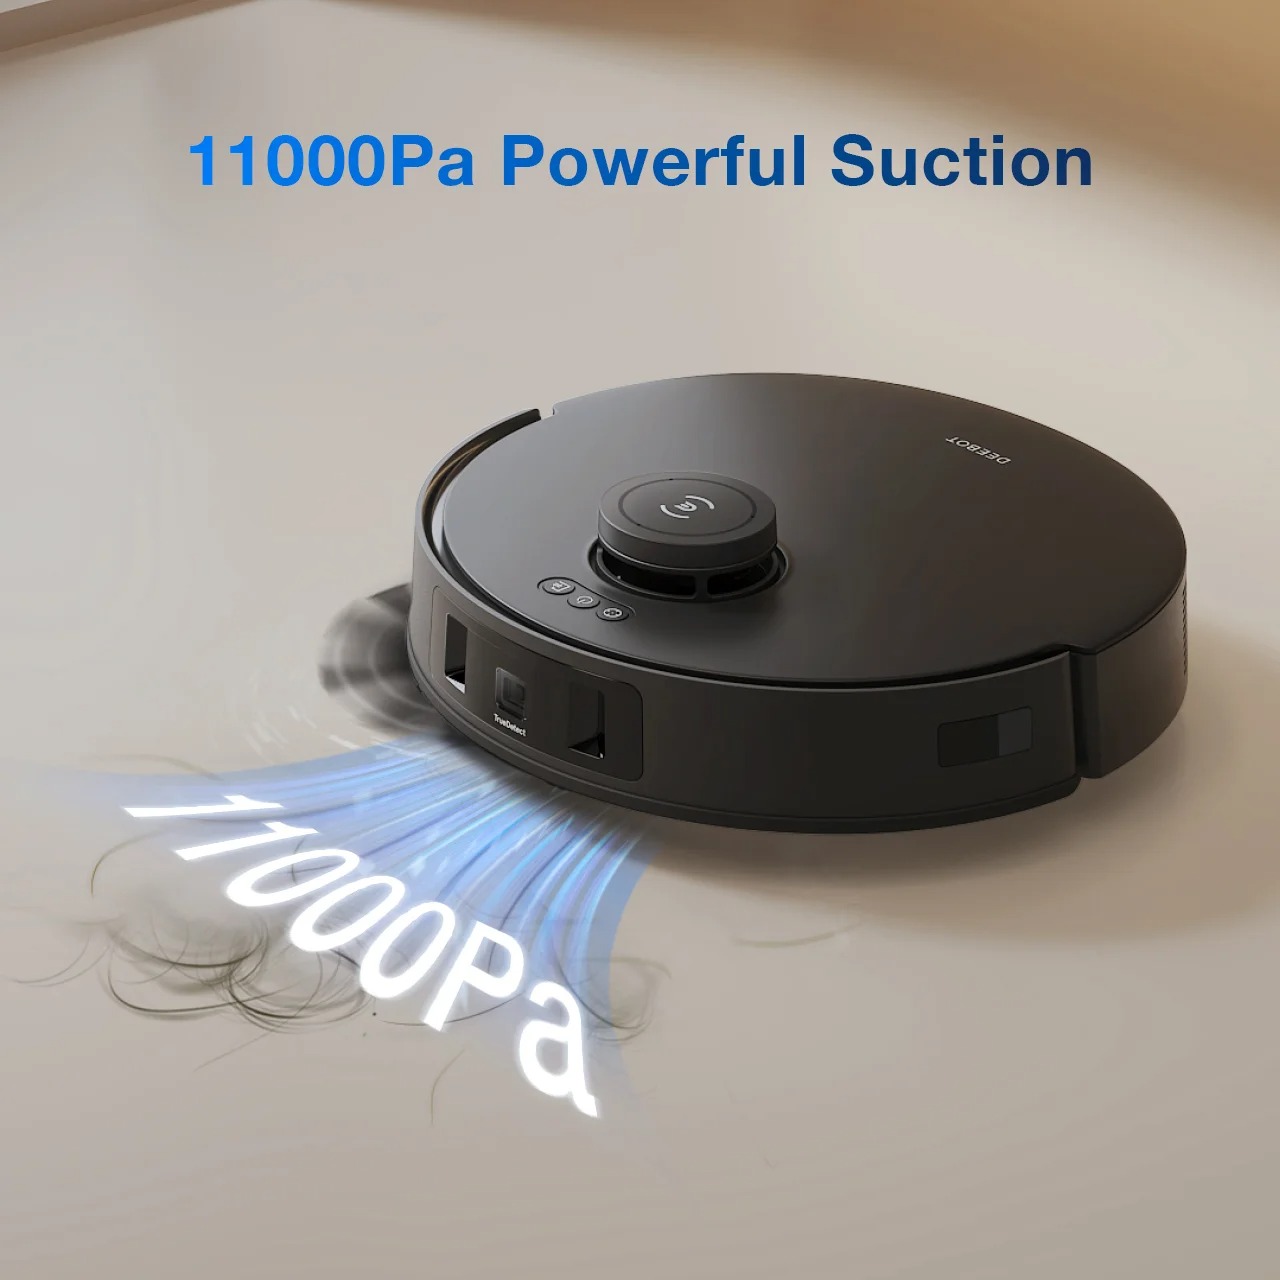 2.11000Pa-Powerful-Su